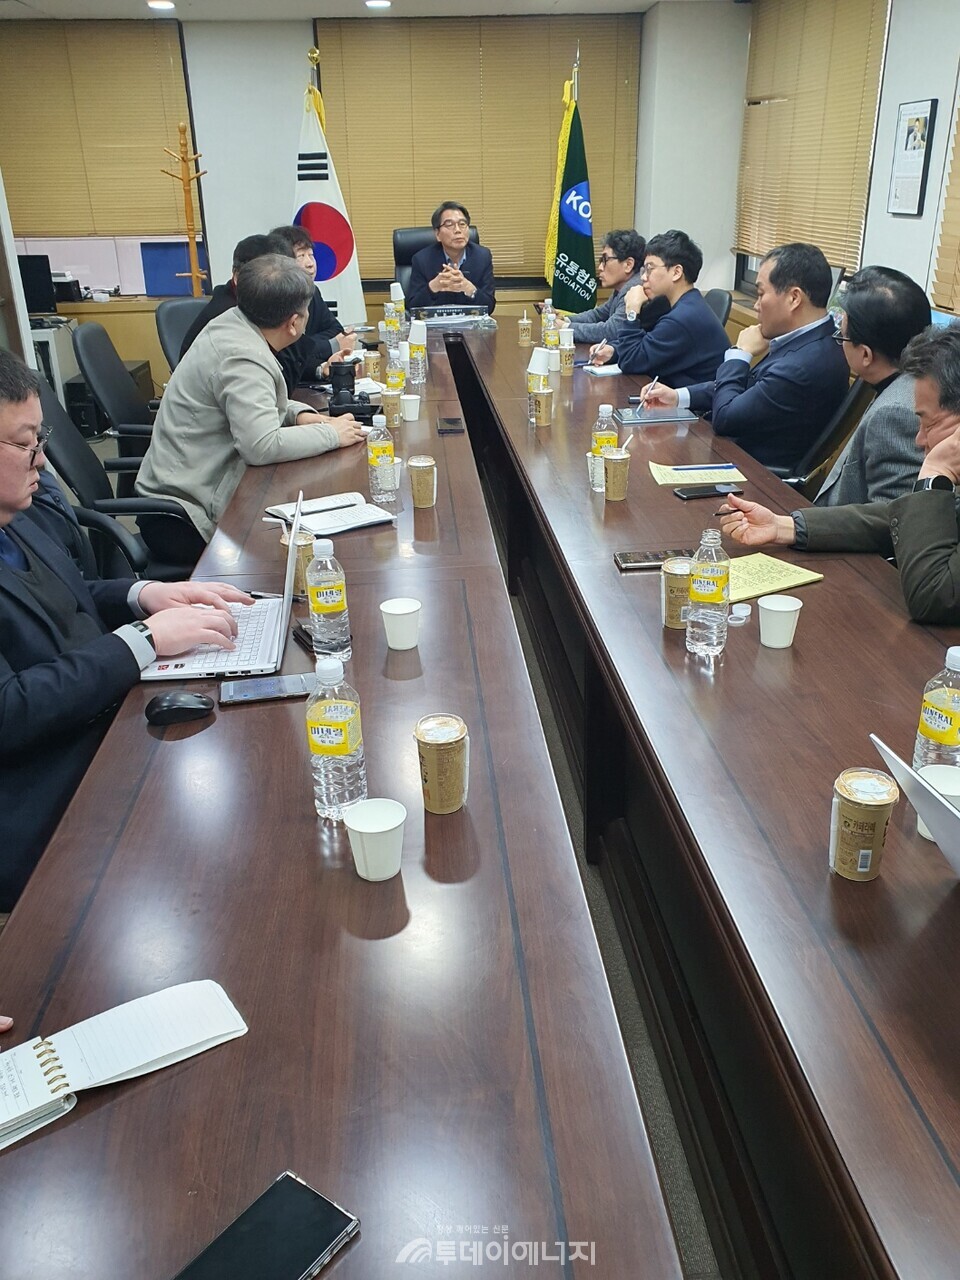 한국석유유통협회 회의실에서 개최된 기자 간담회 모습/투데이에너지